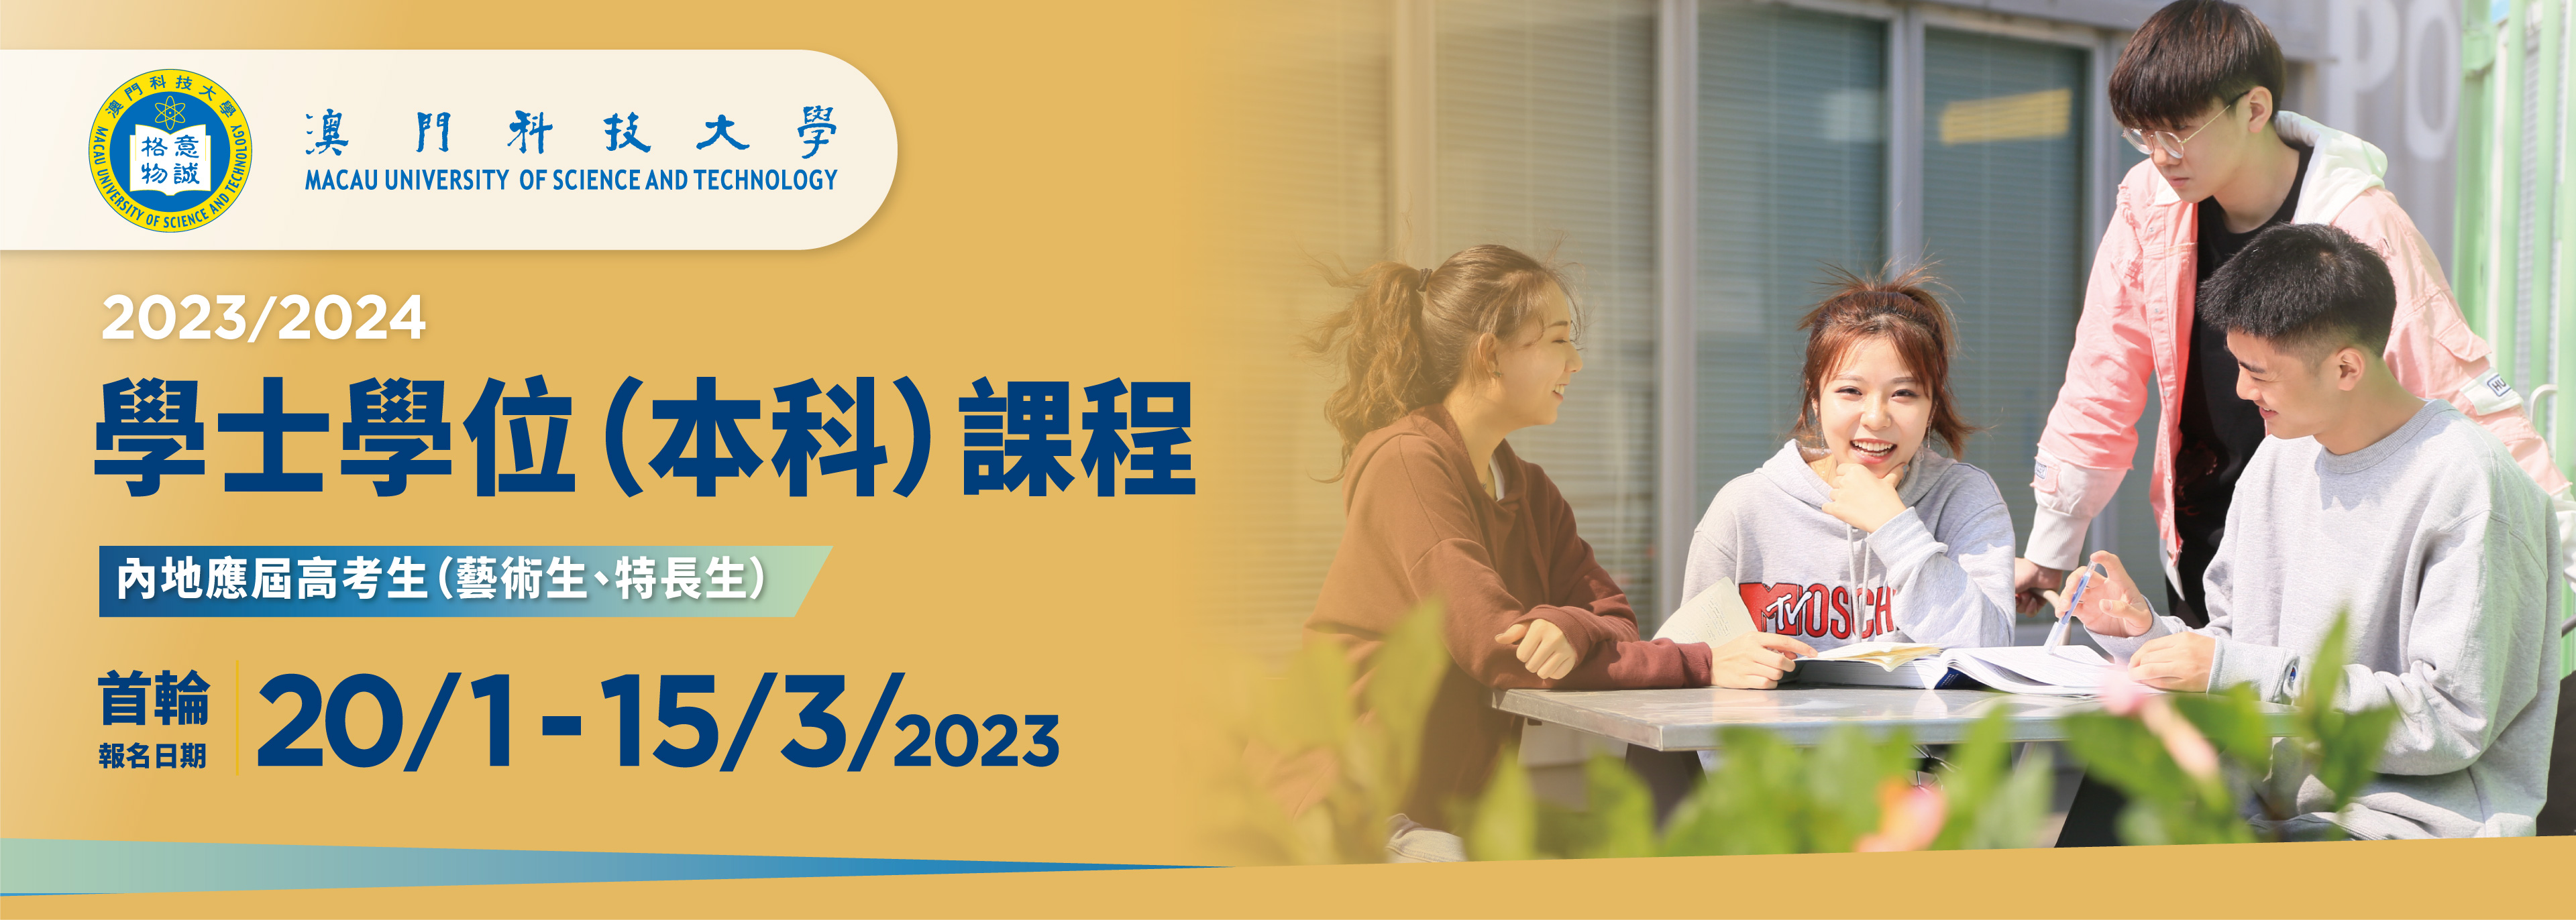 2023/2024 學士學位(本科)課程 內地應屆高考生(藝術生、特長生)